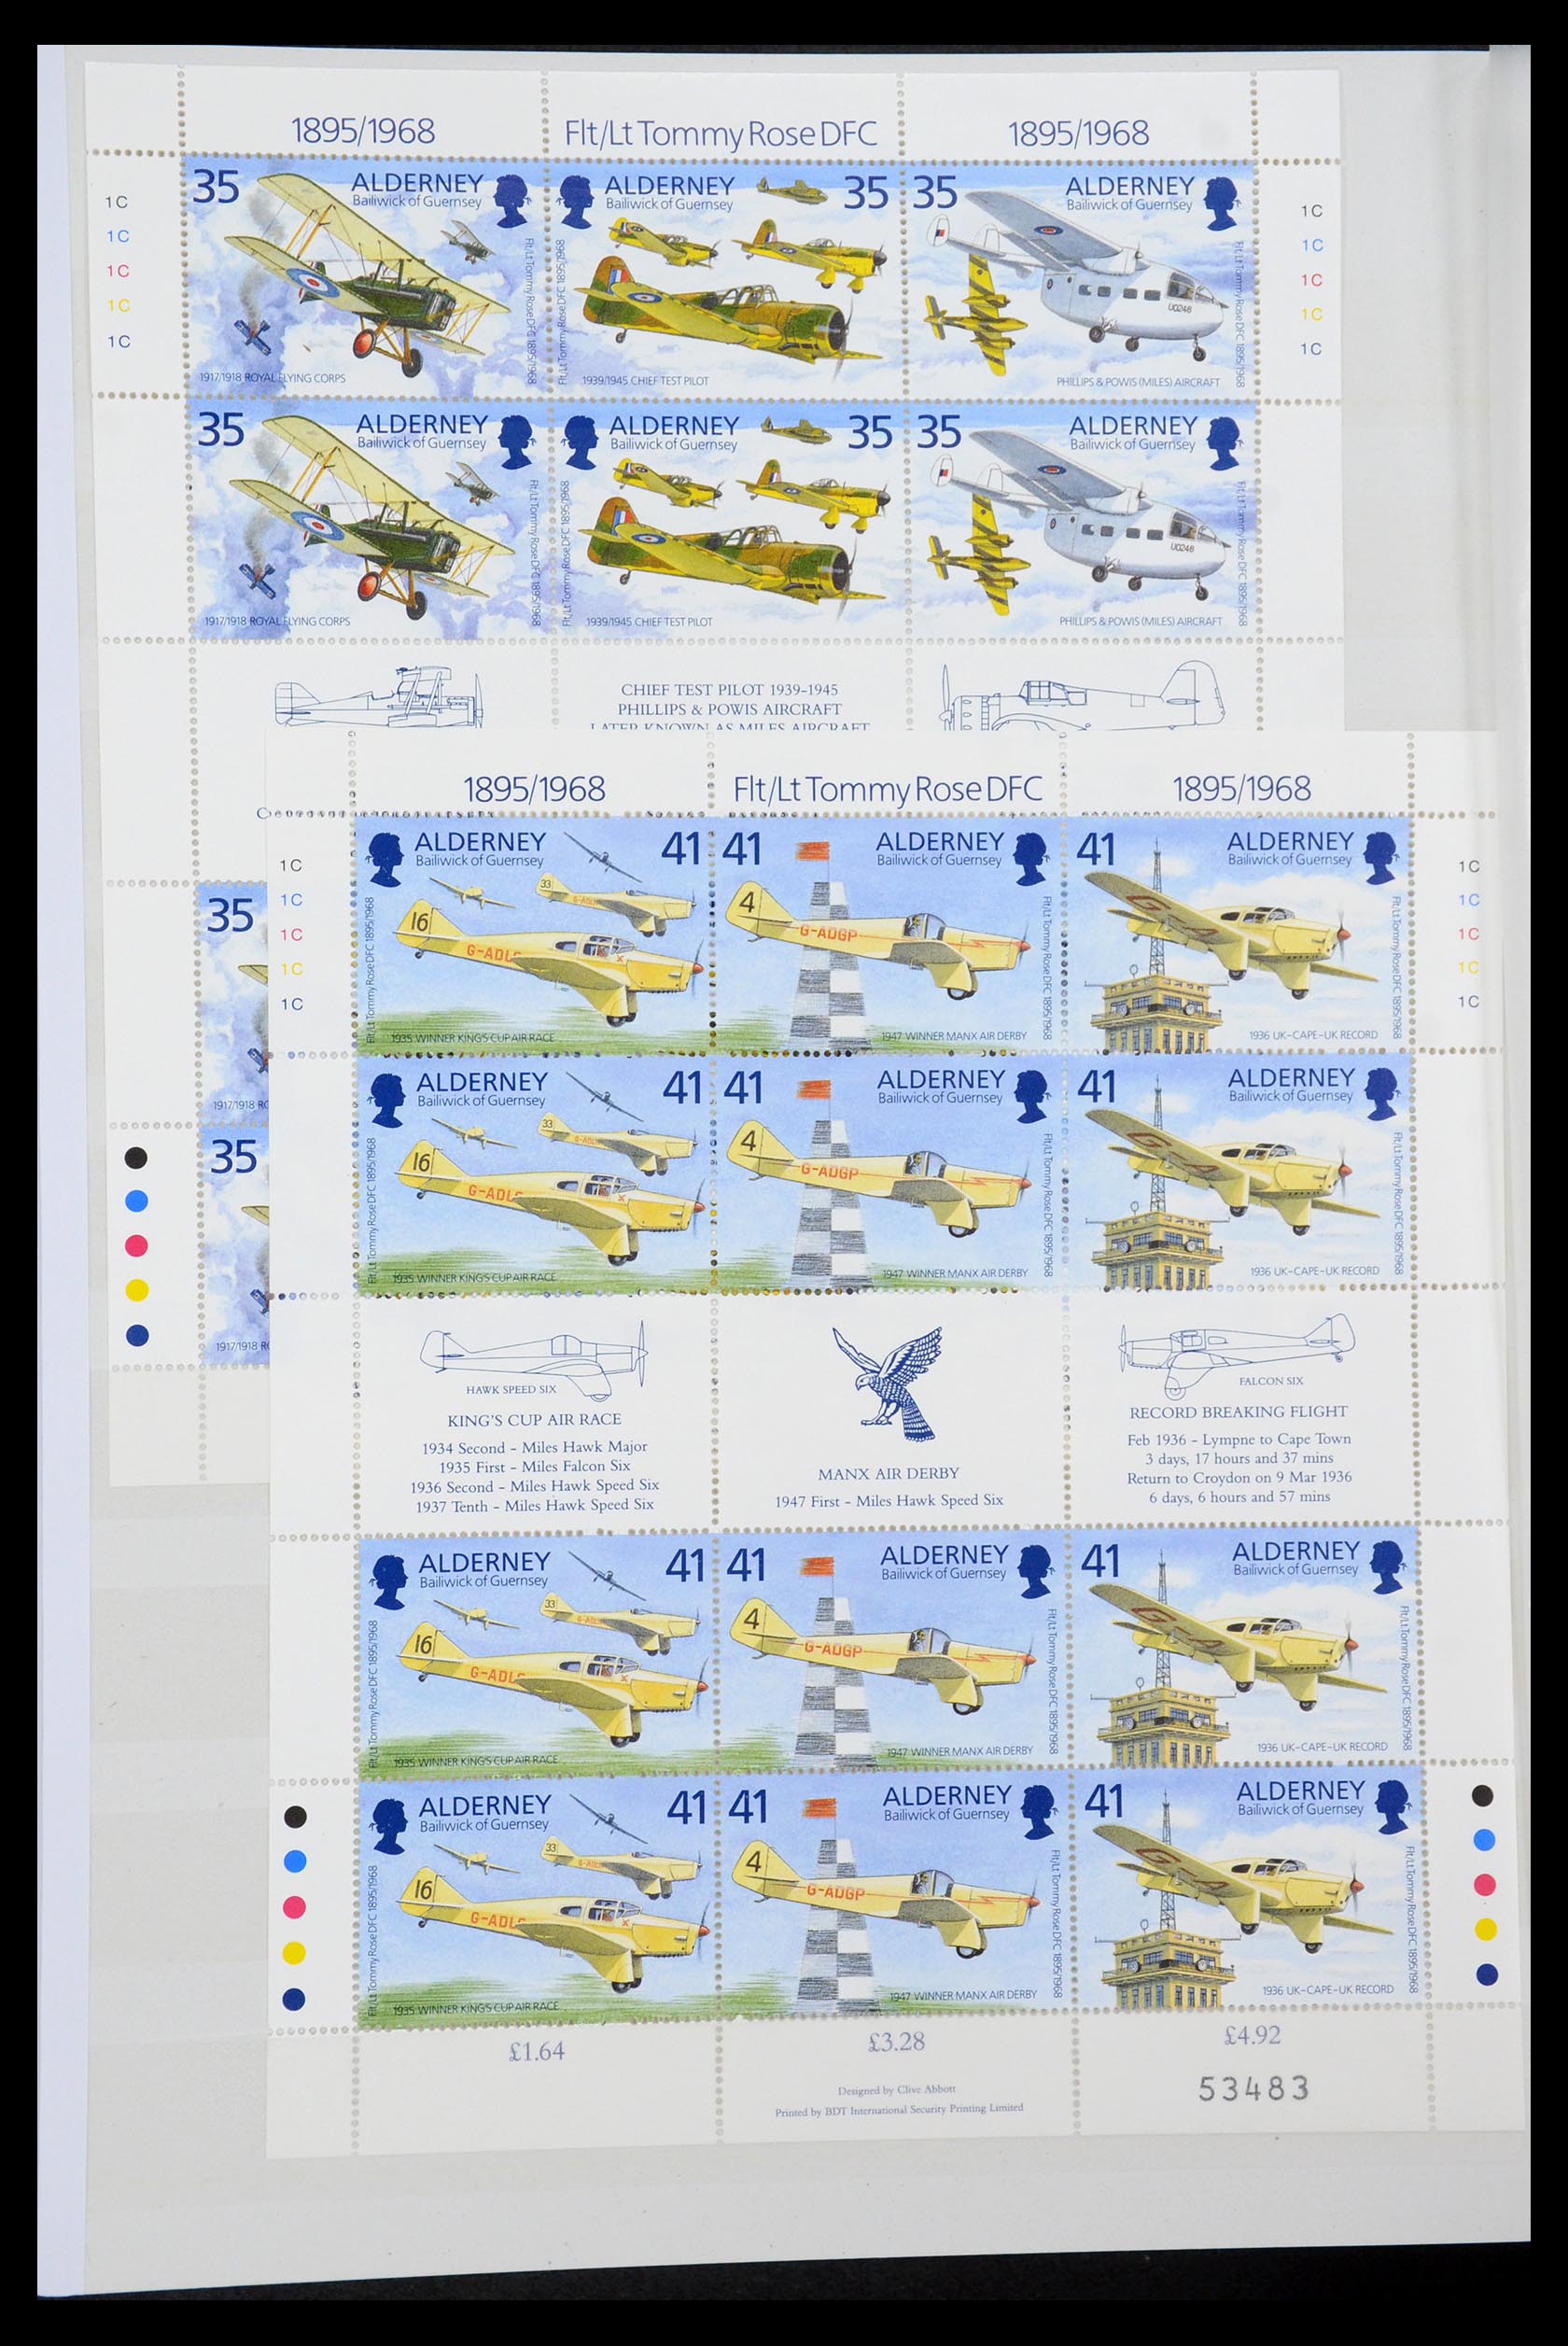 35529 056 - Stamp Collection 35529 Alderney1983-2014!